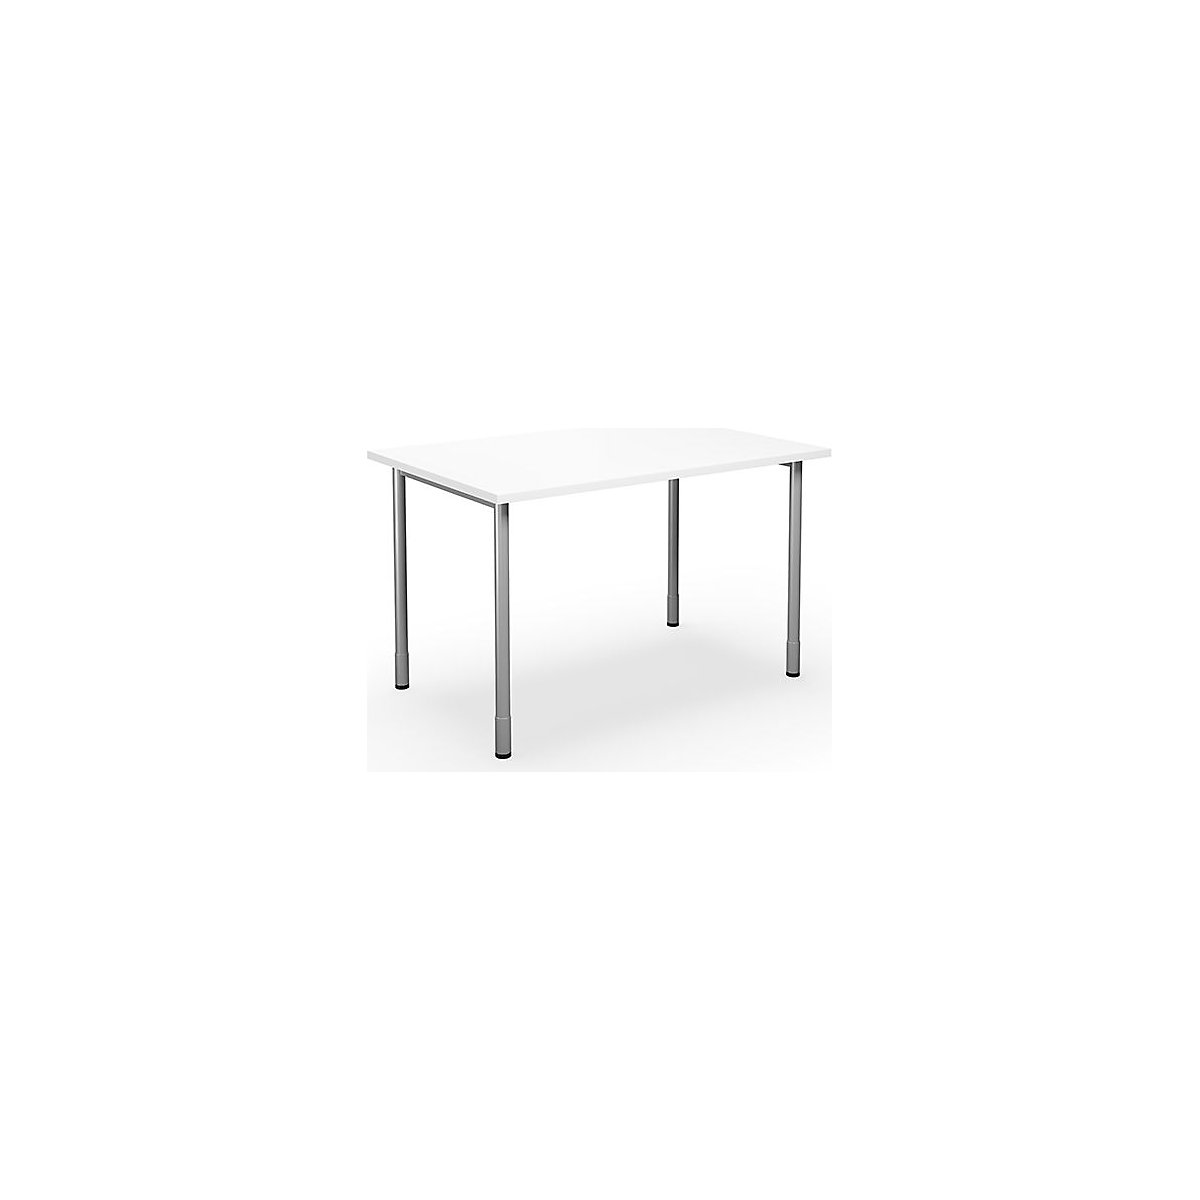 DUO-C multi-purpose desk, straight tabletop, WxD 1200 x 800 mm, white, silver-10